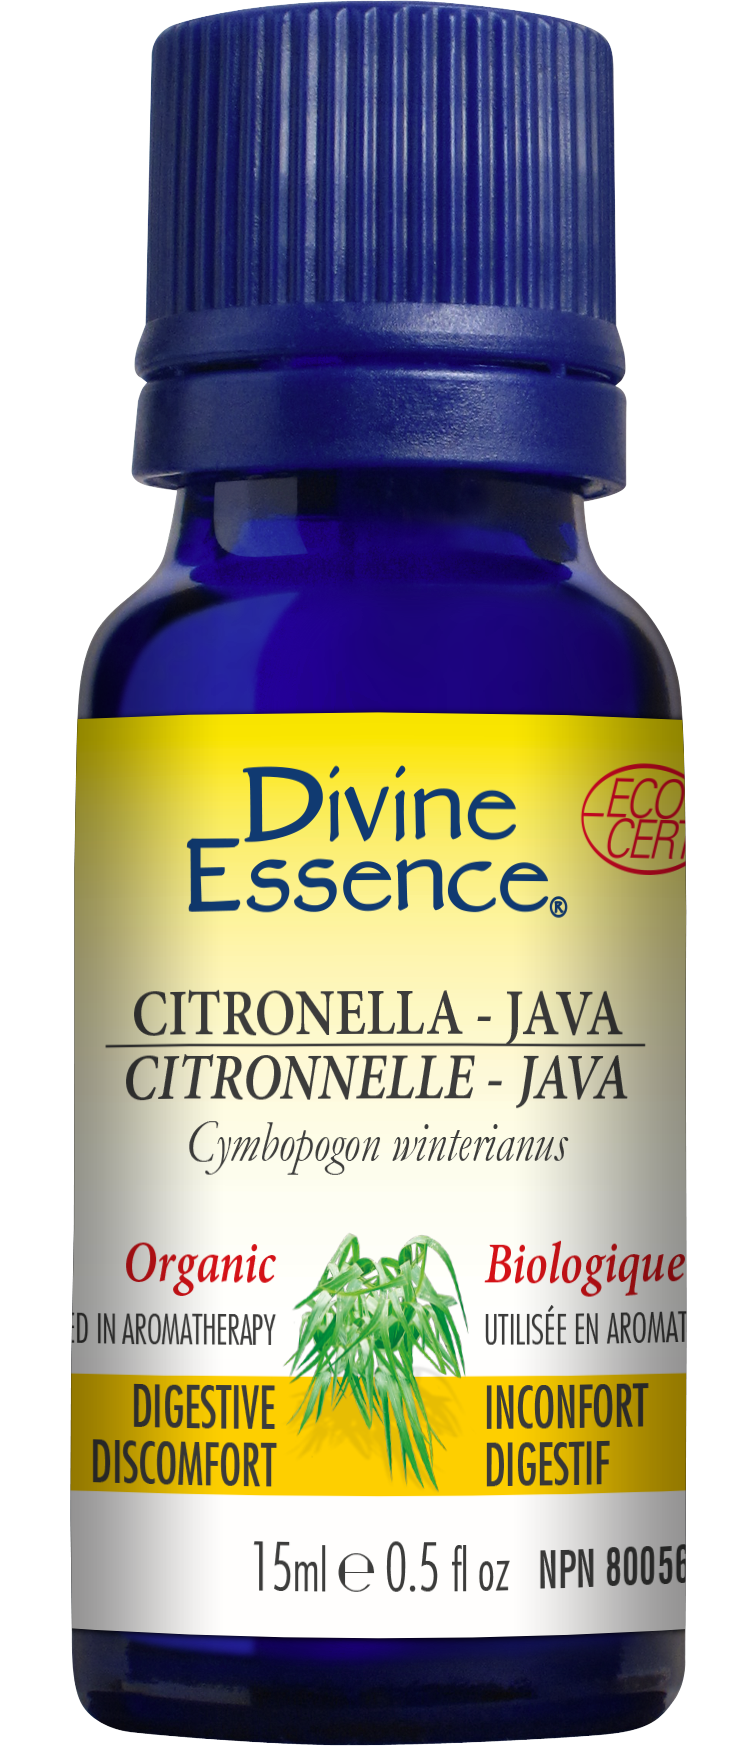 Citronella - Java 15ml